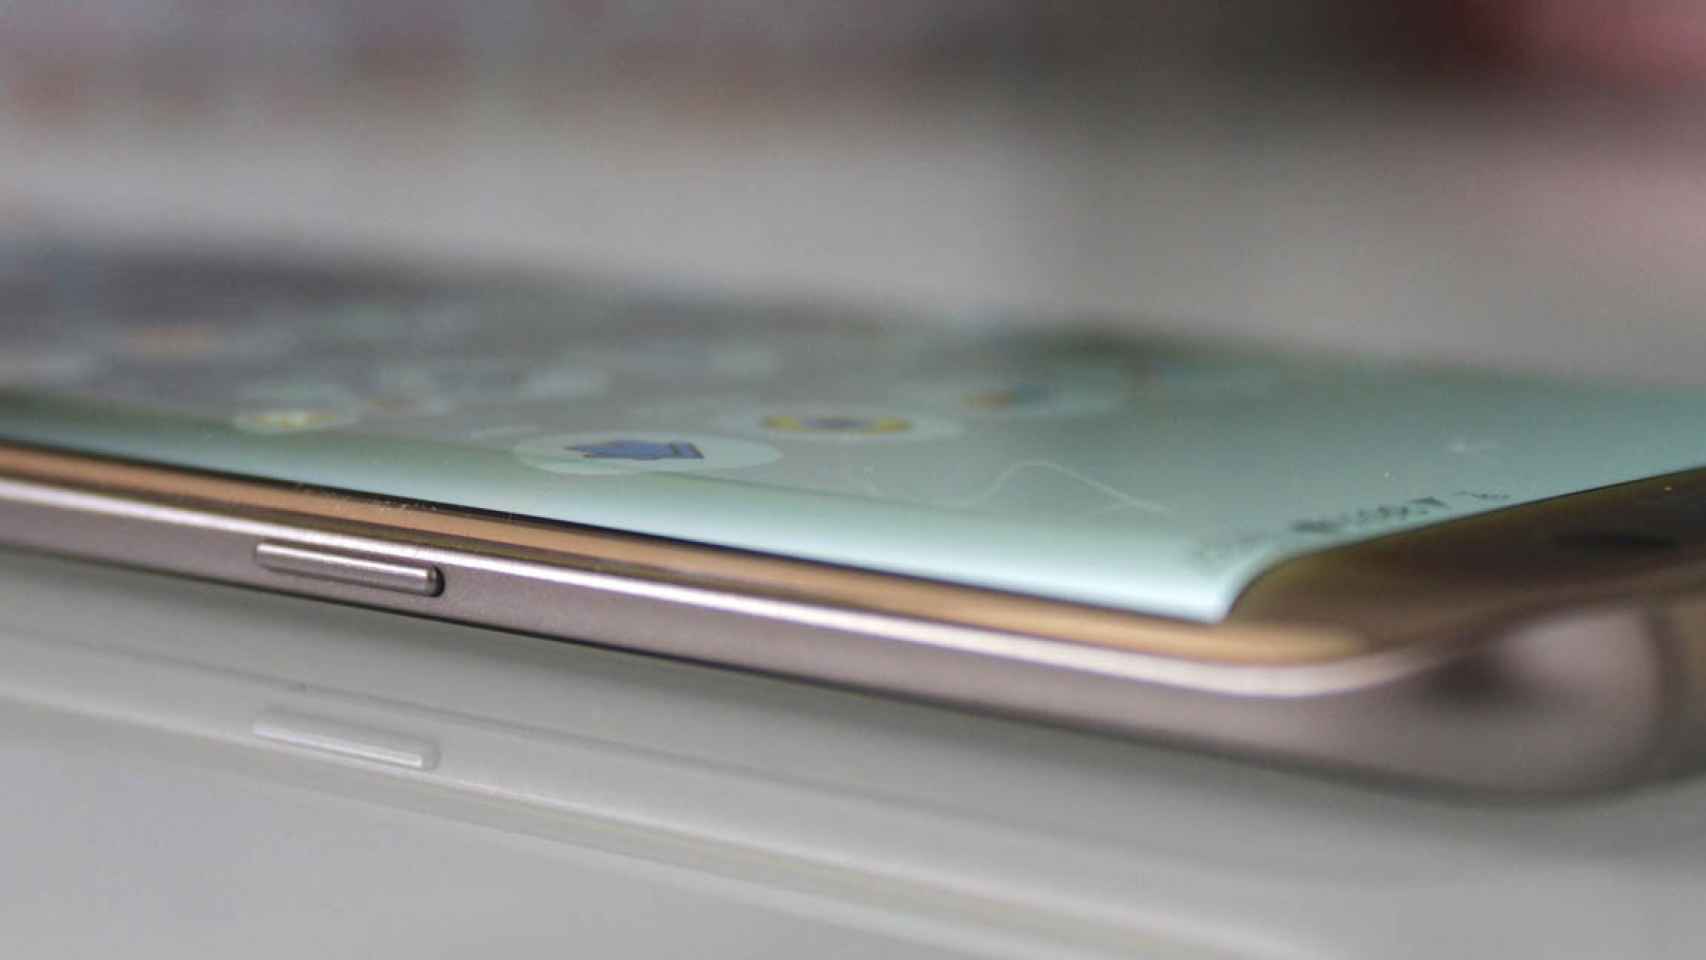 El Samsung Galaxy S8 sería sólo Edge, sin versión plana